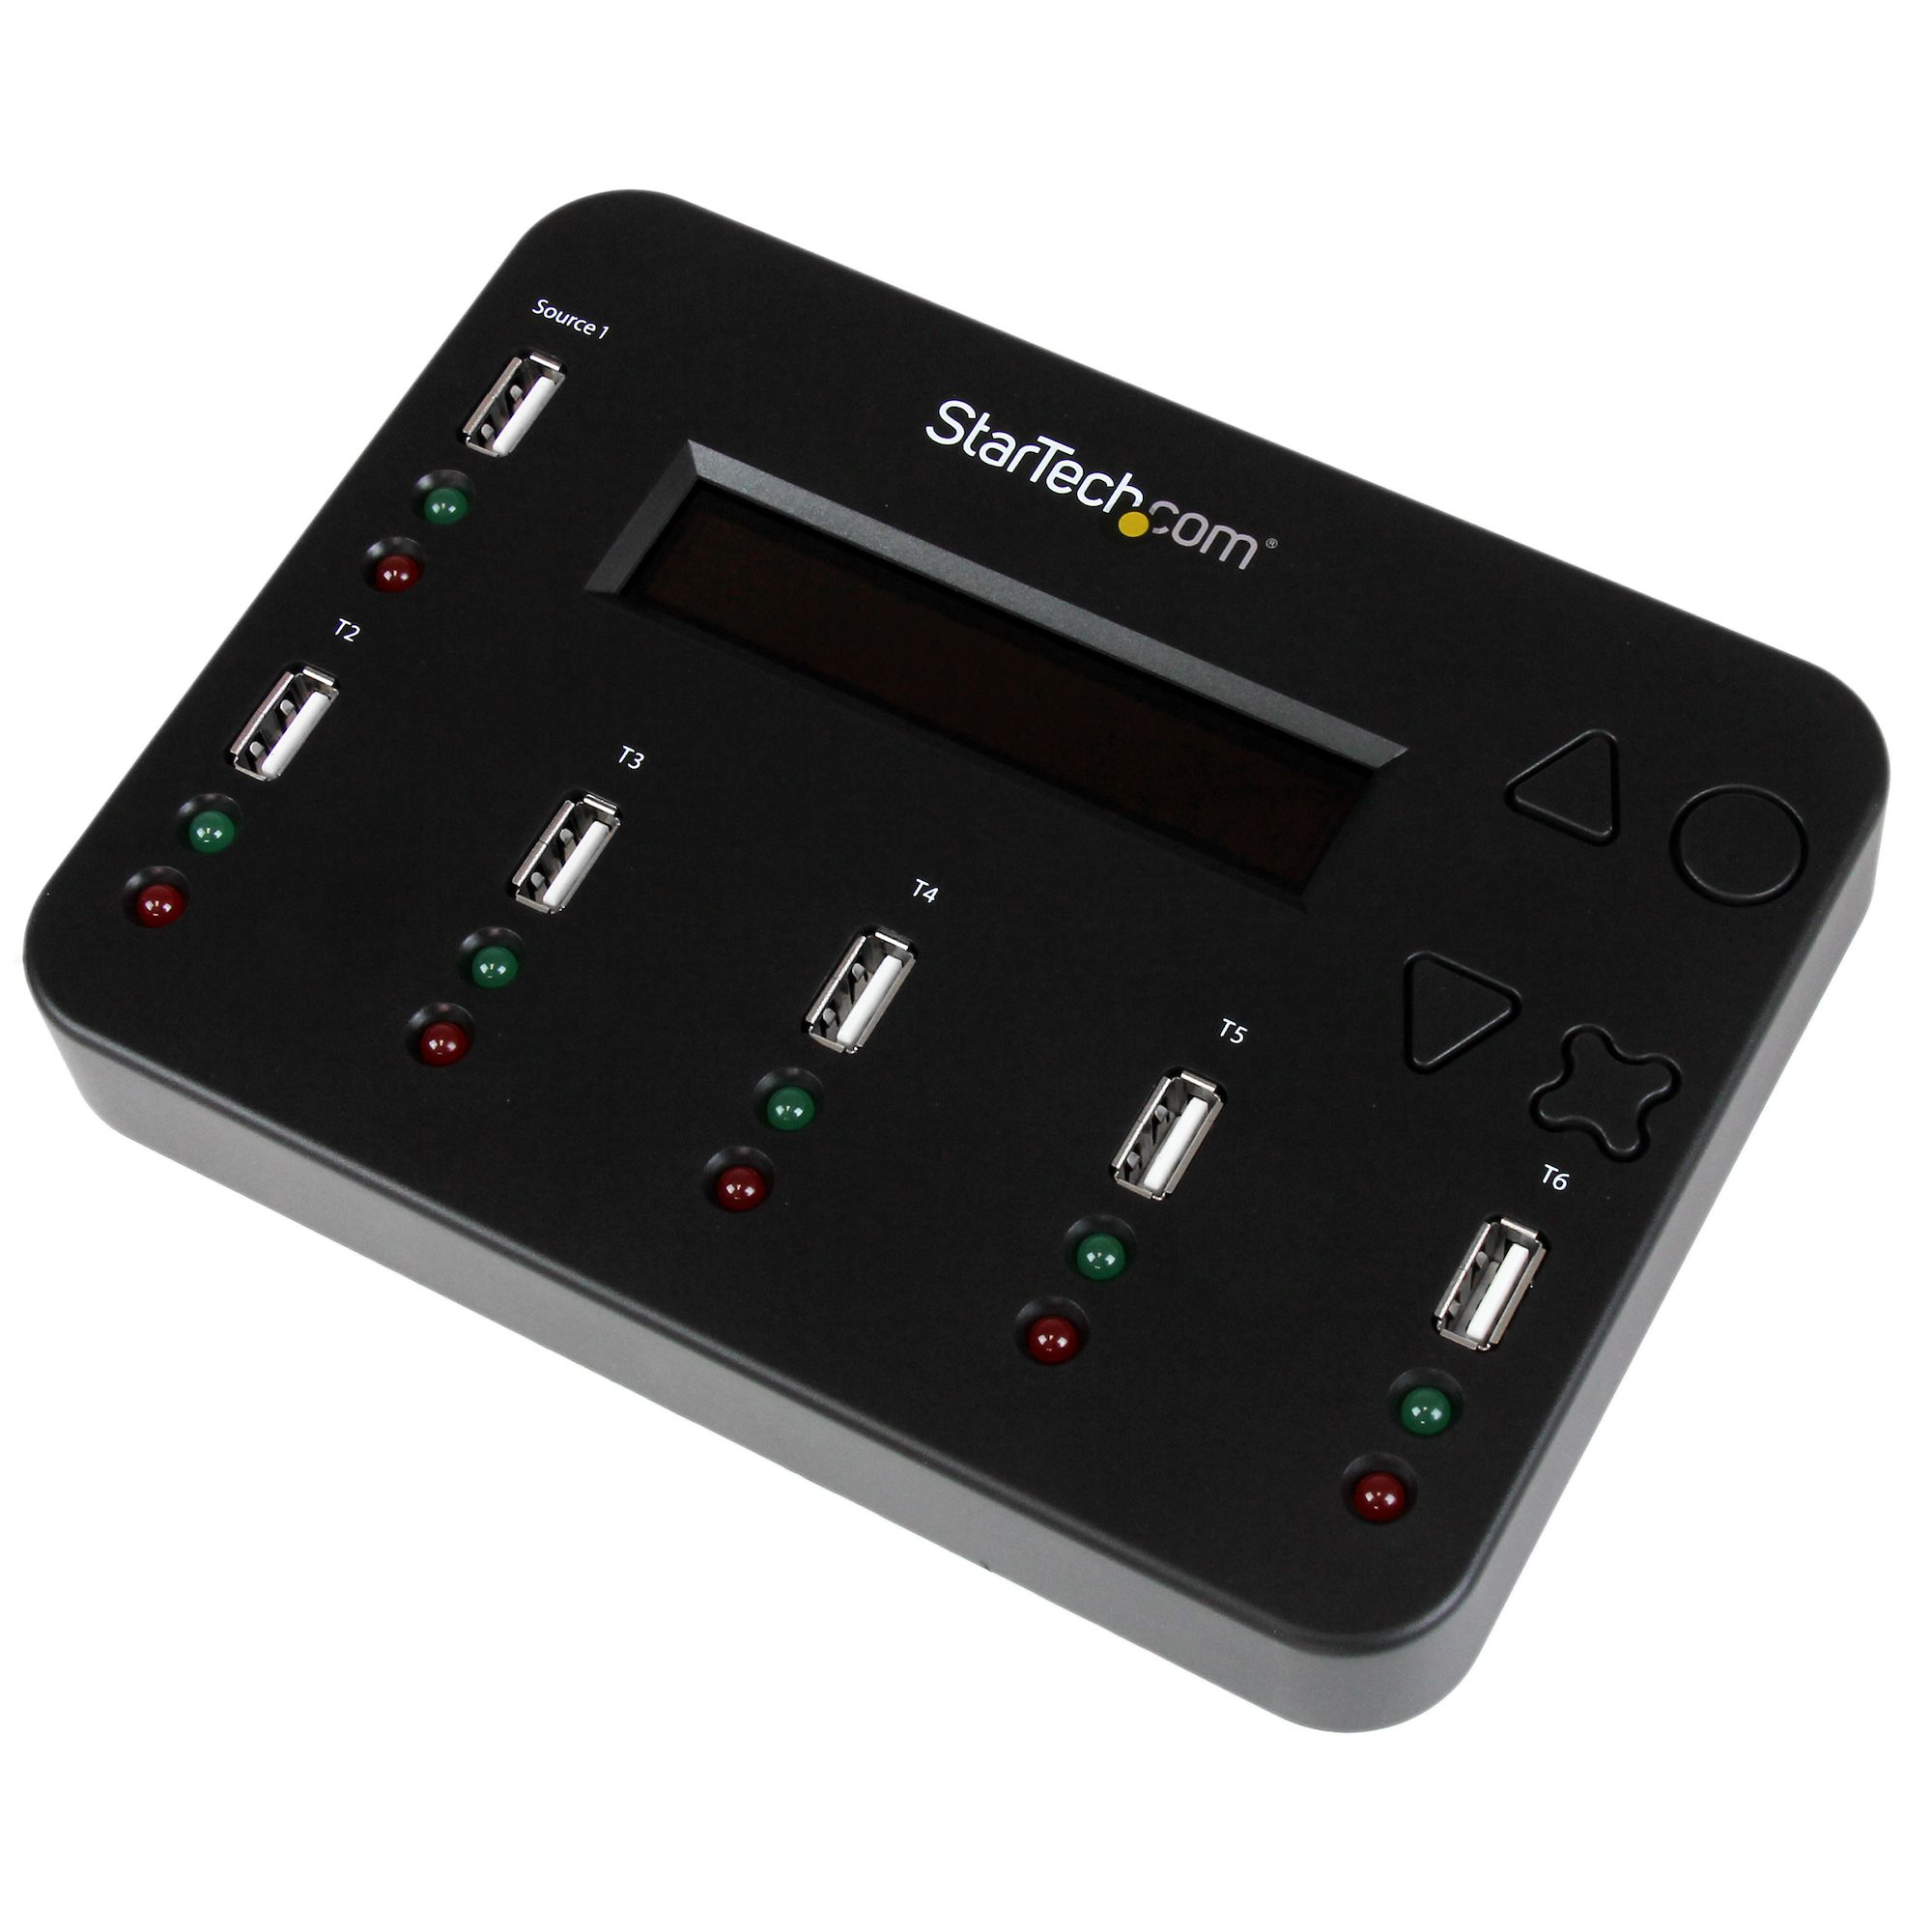 StarTech.com 1:5 Standalone USB Flash Drive Duplikator und Eraser-1 zu 5 Flash Drive Kopierer & Sanitizer